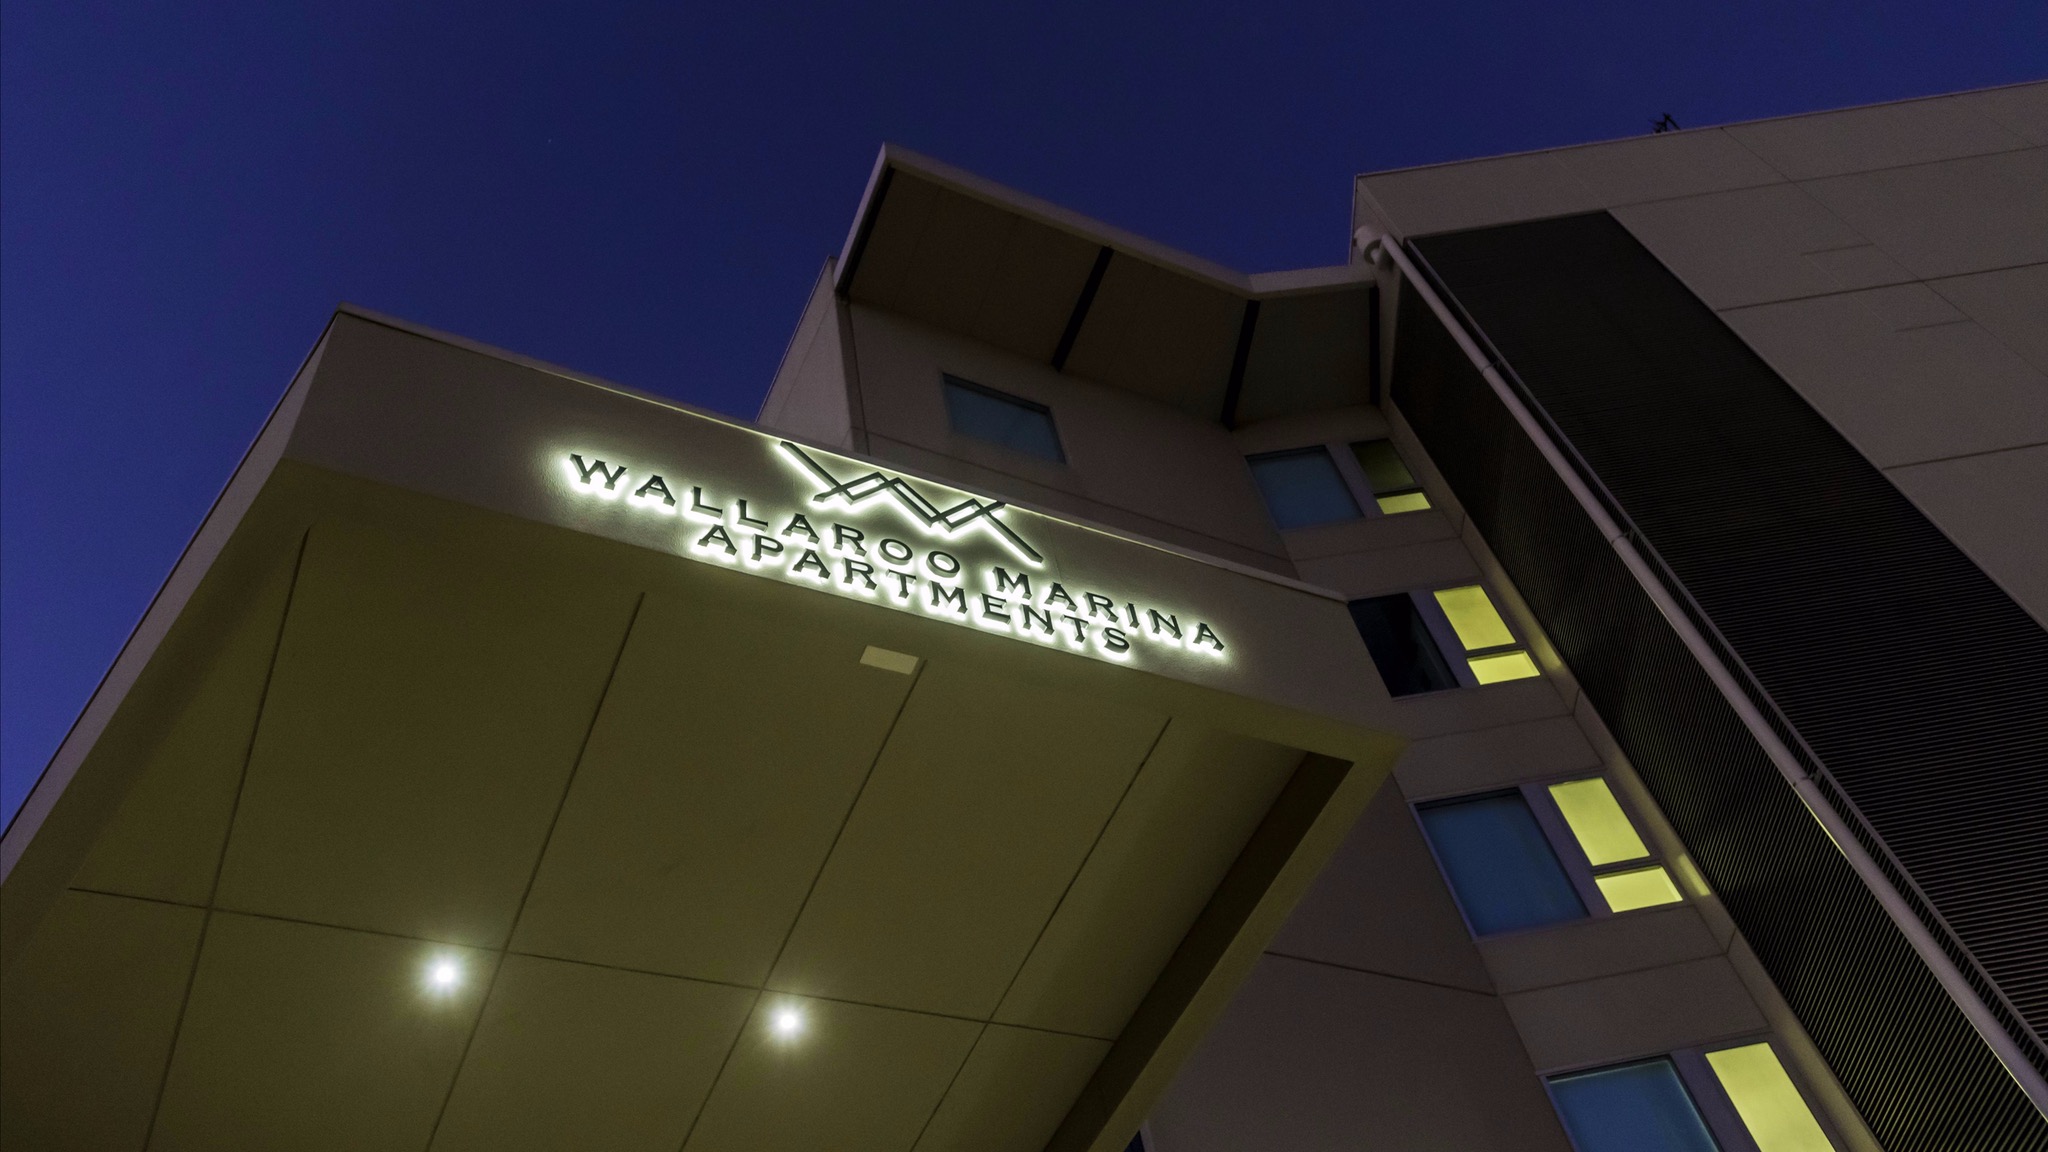 Wallaroo Marina Apartments - Accommodation Newcastle